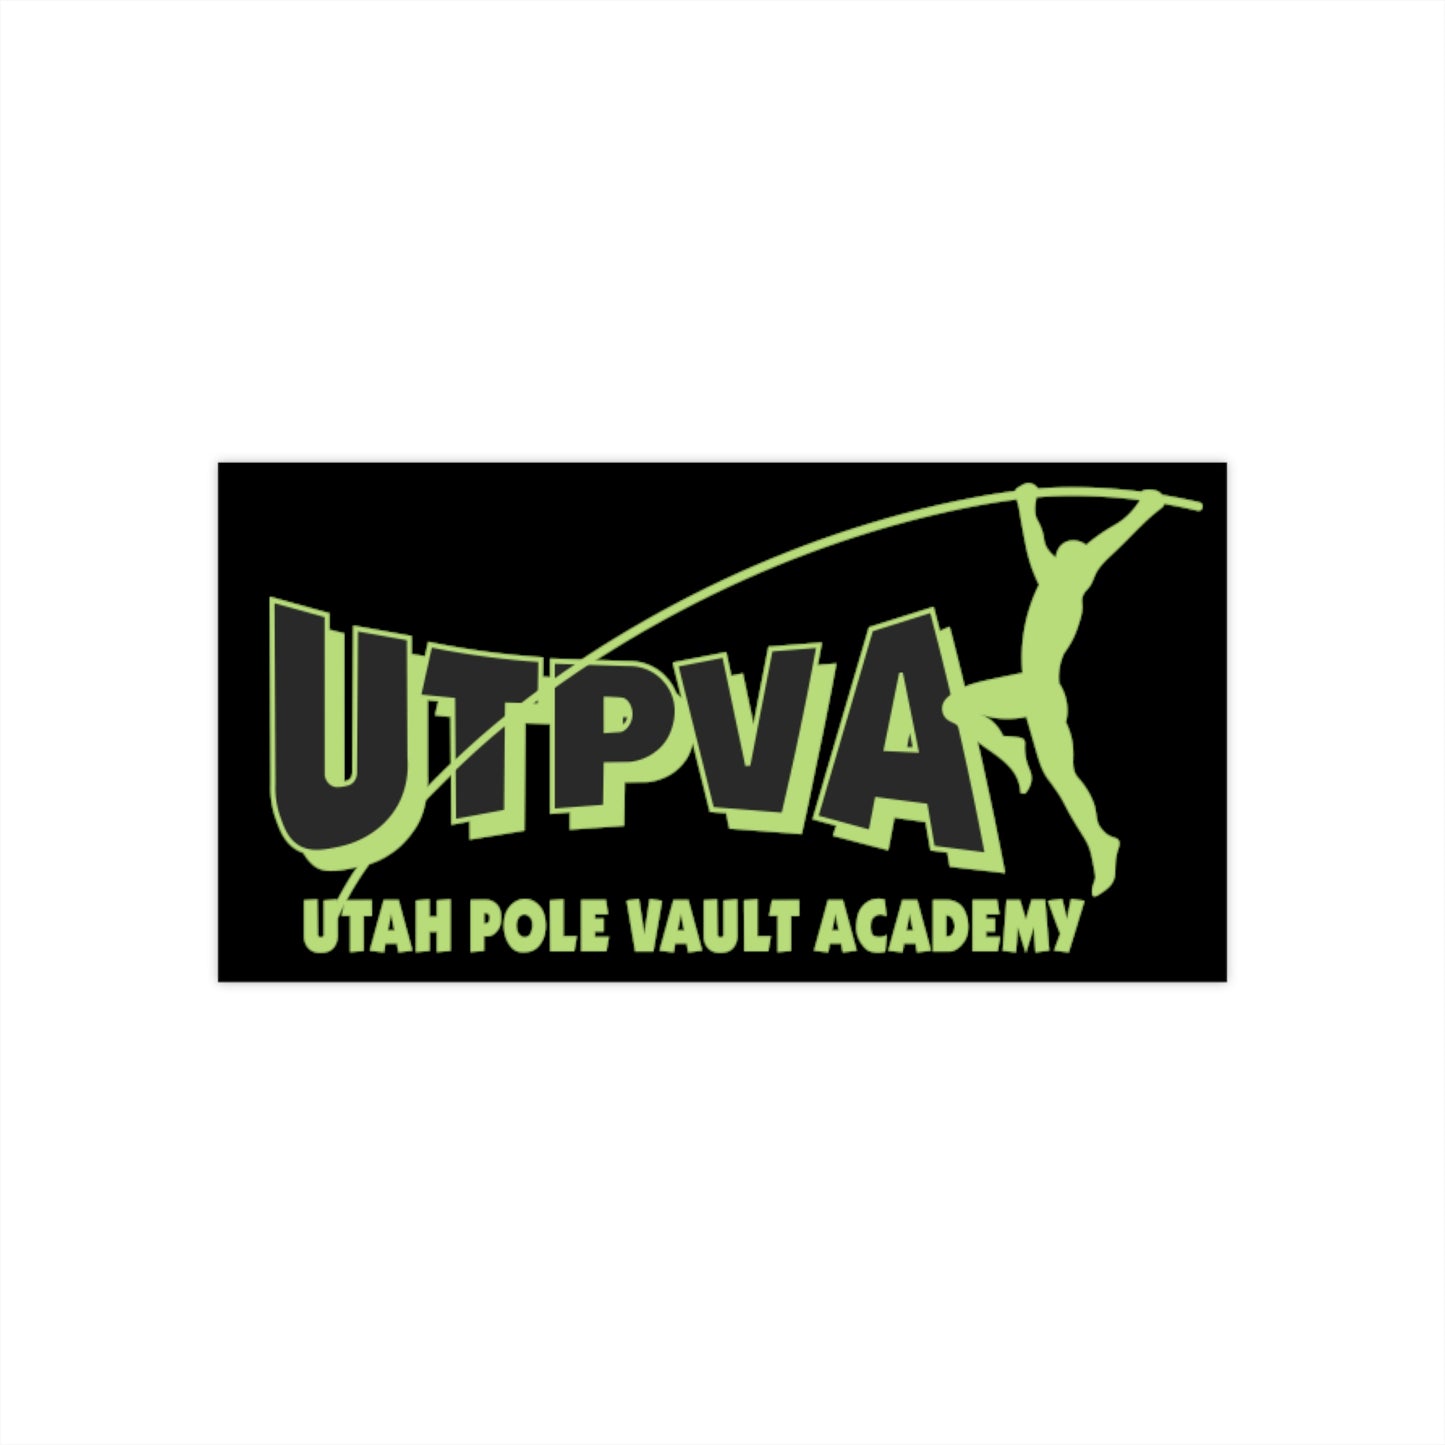 UTPVA's Classic Original Sticker